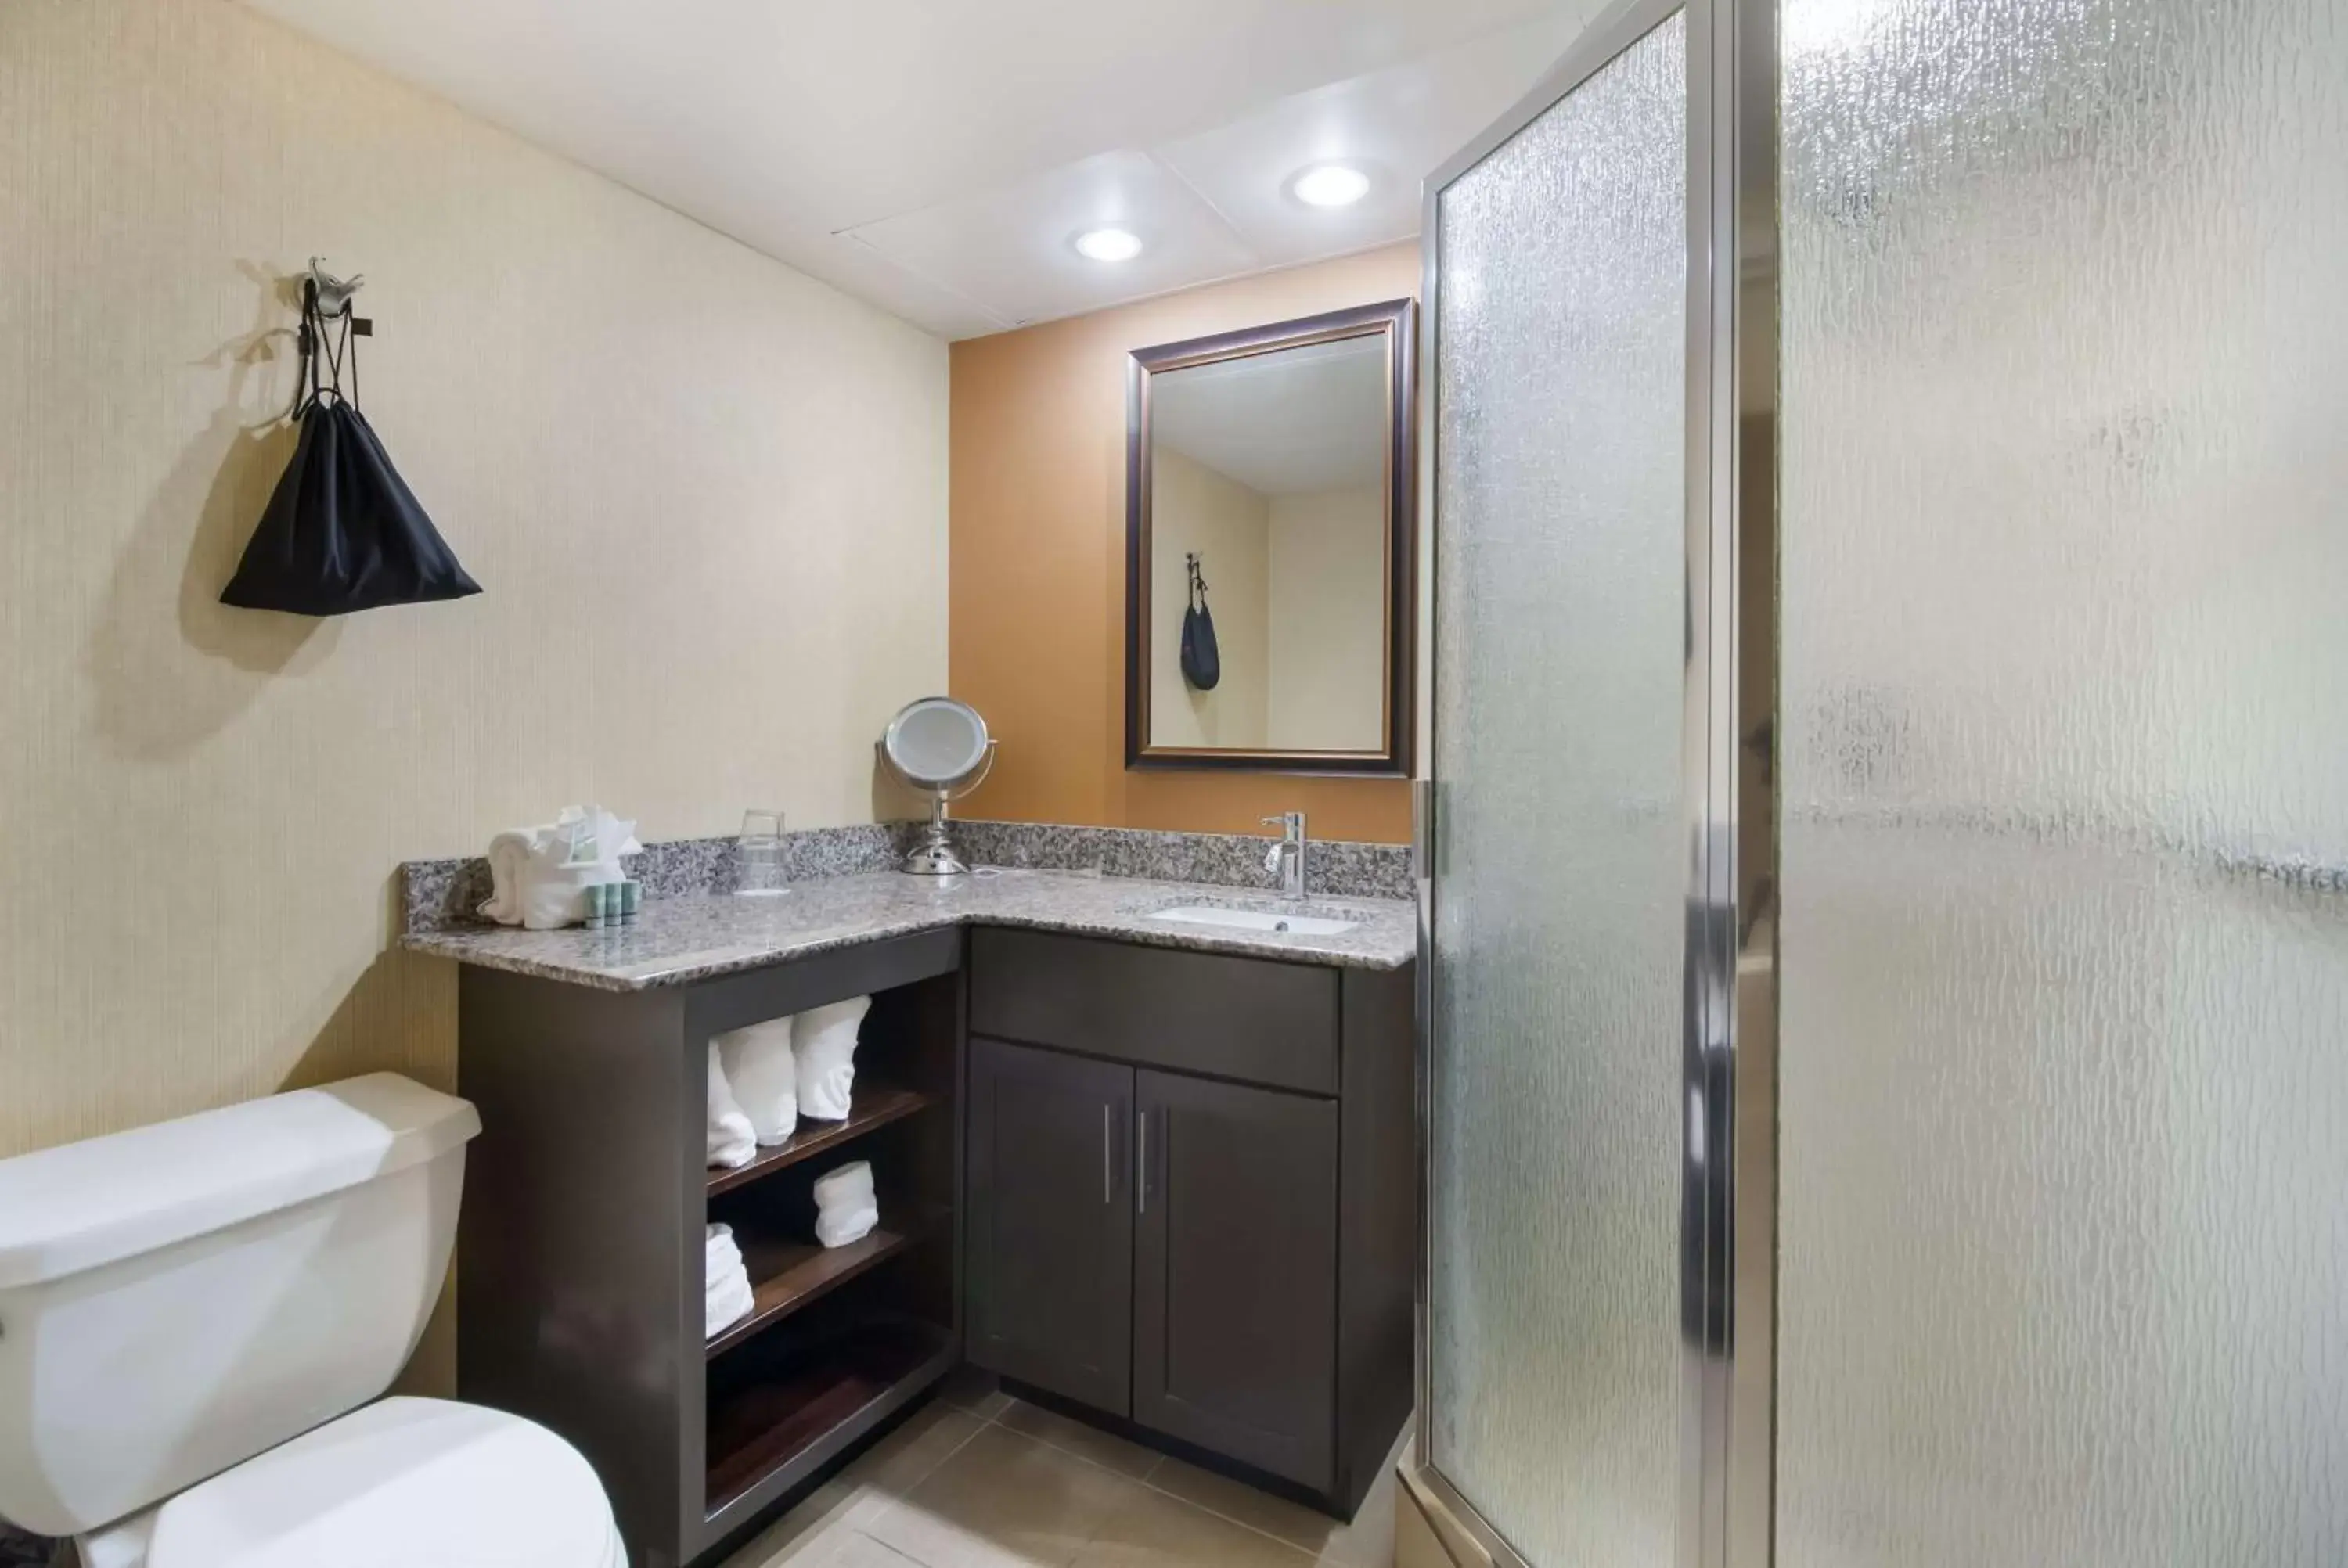 Bedroom, Bathroom in Best Western Suites near Opryland